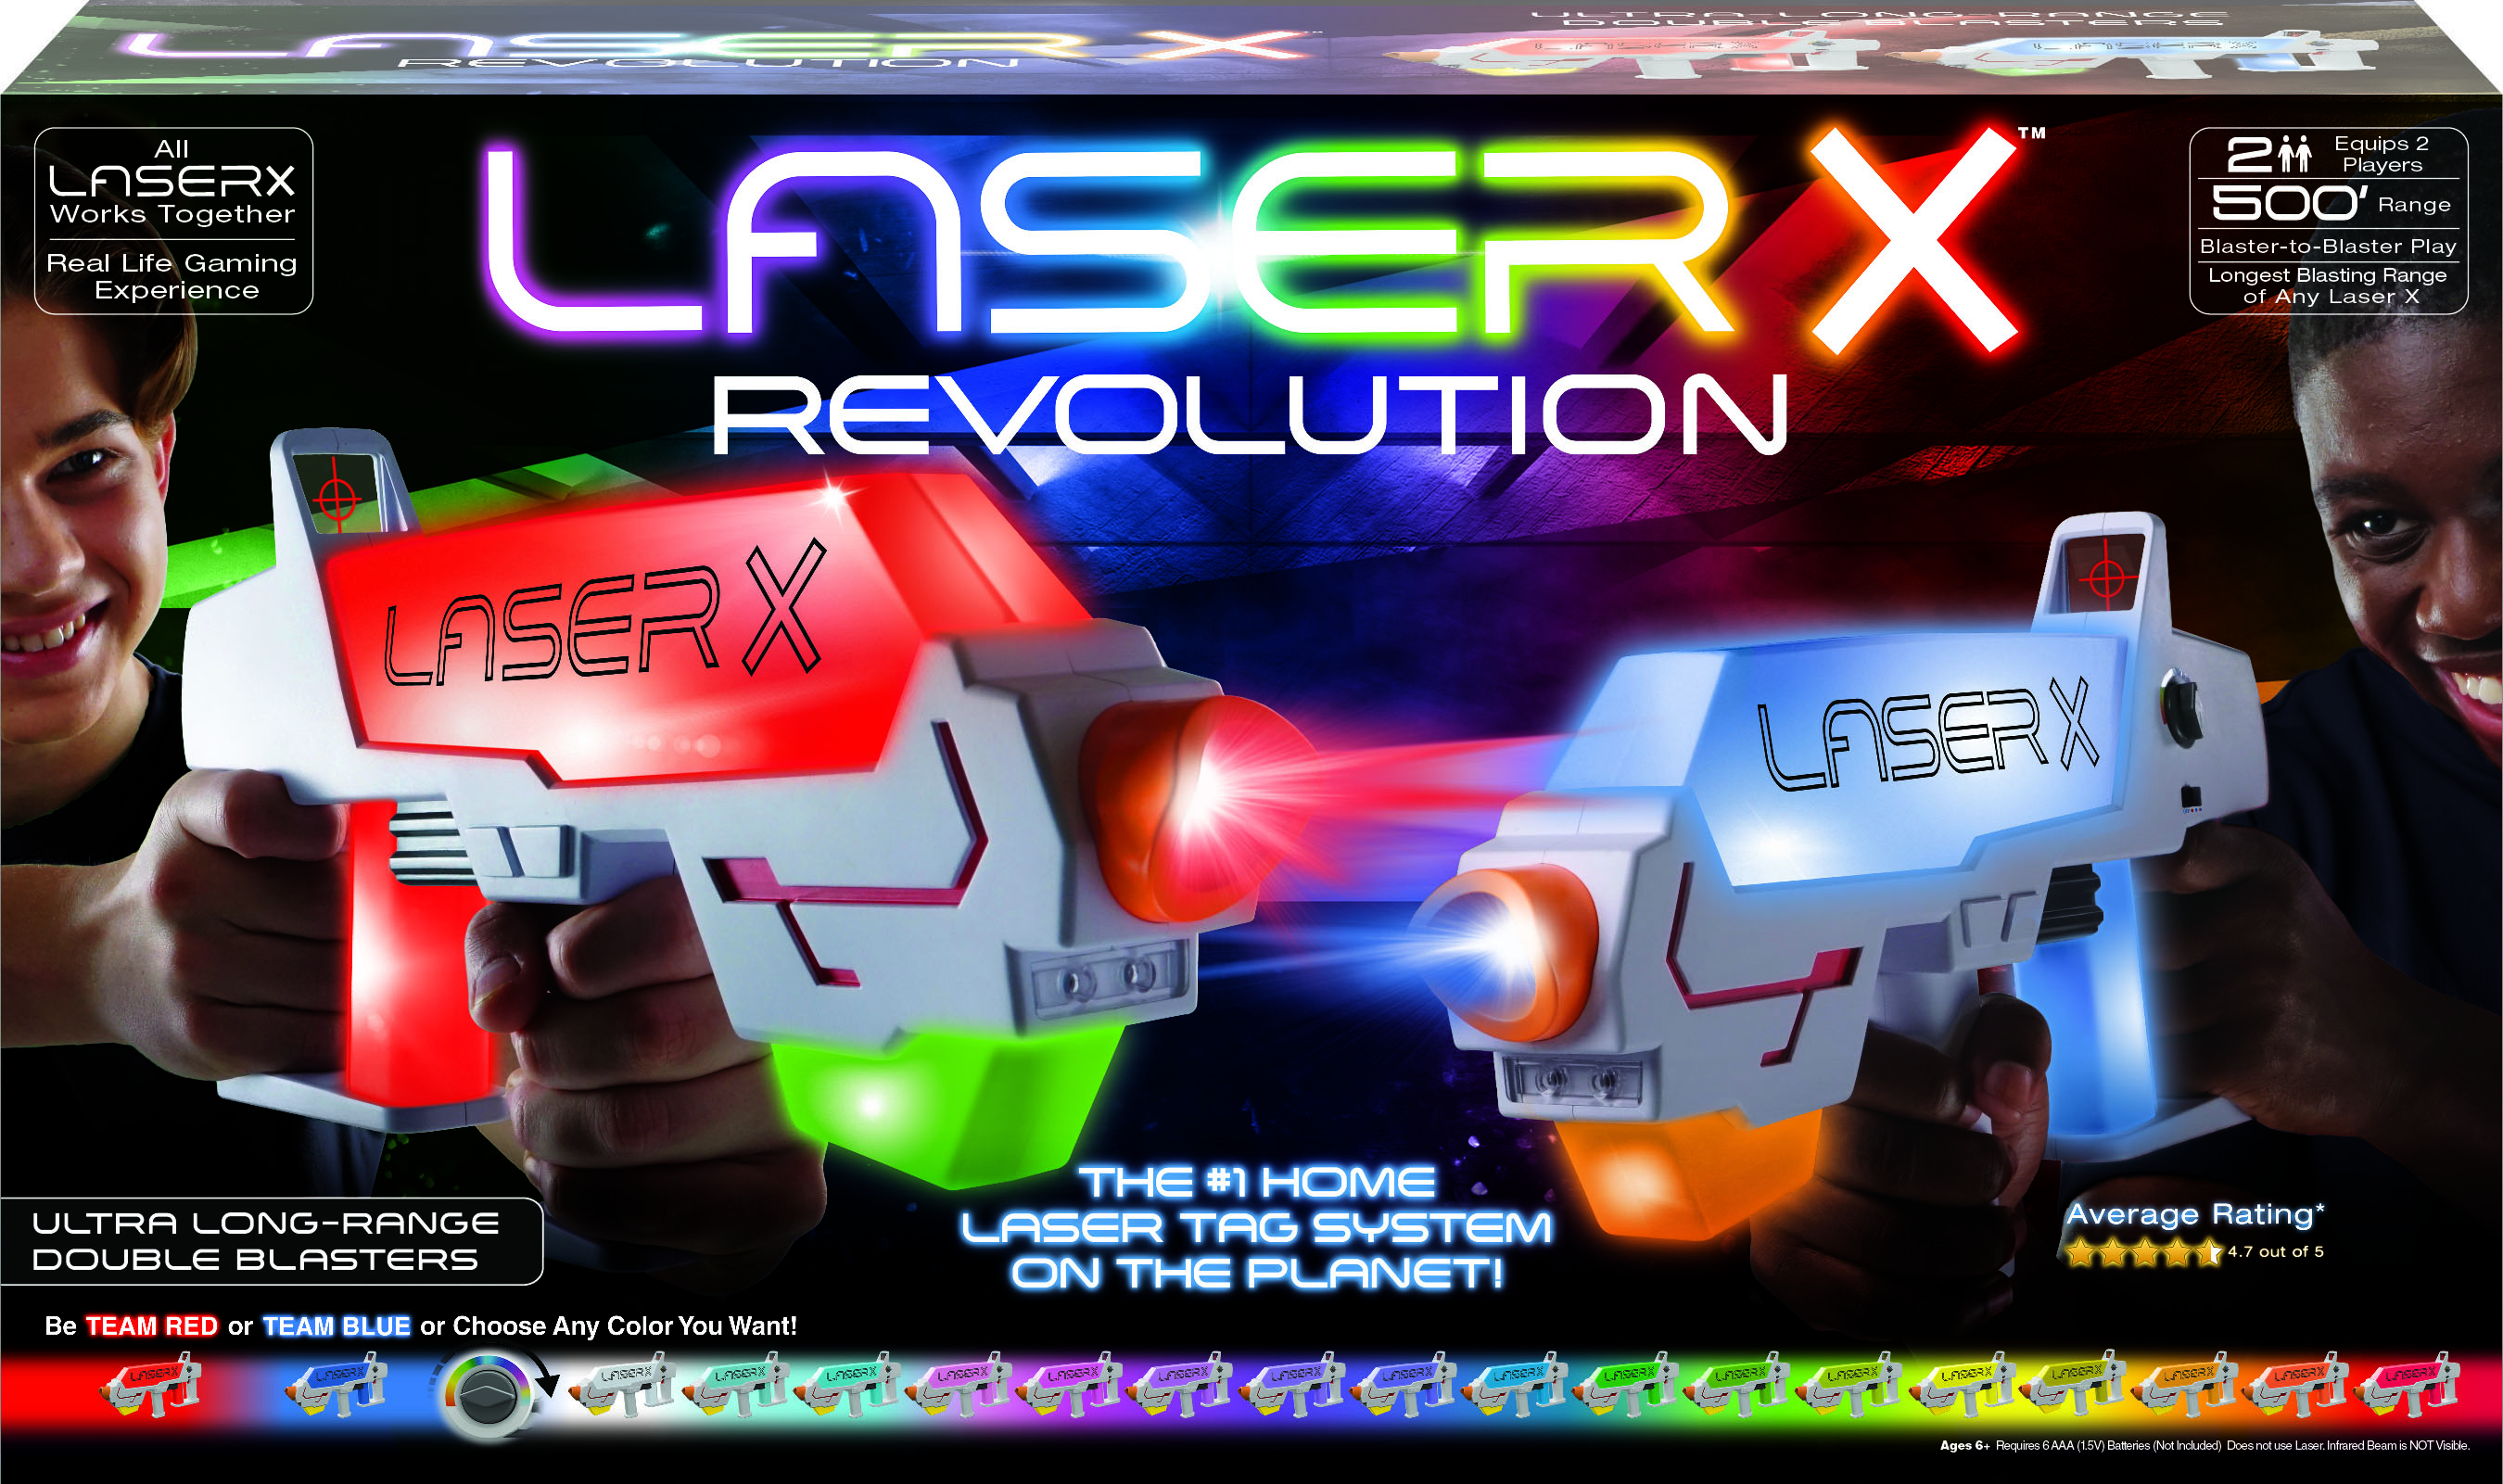 The 500' Range Laser X Tag Blasters - Hammacher Schlemmer